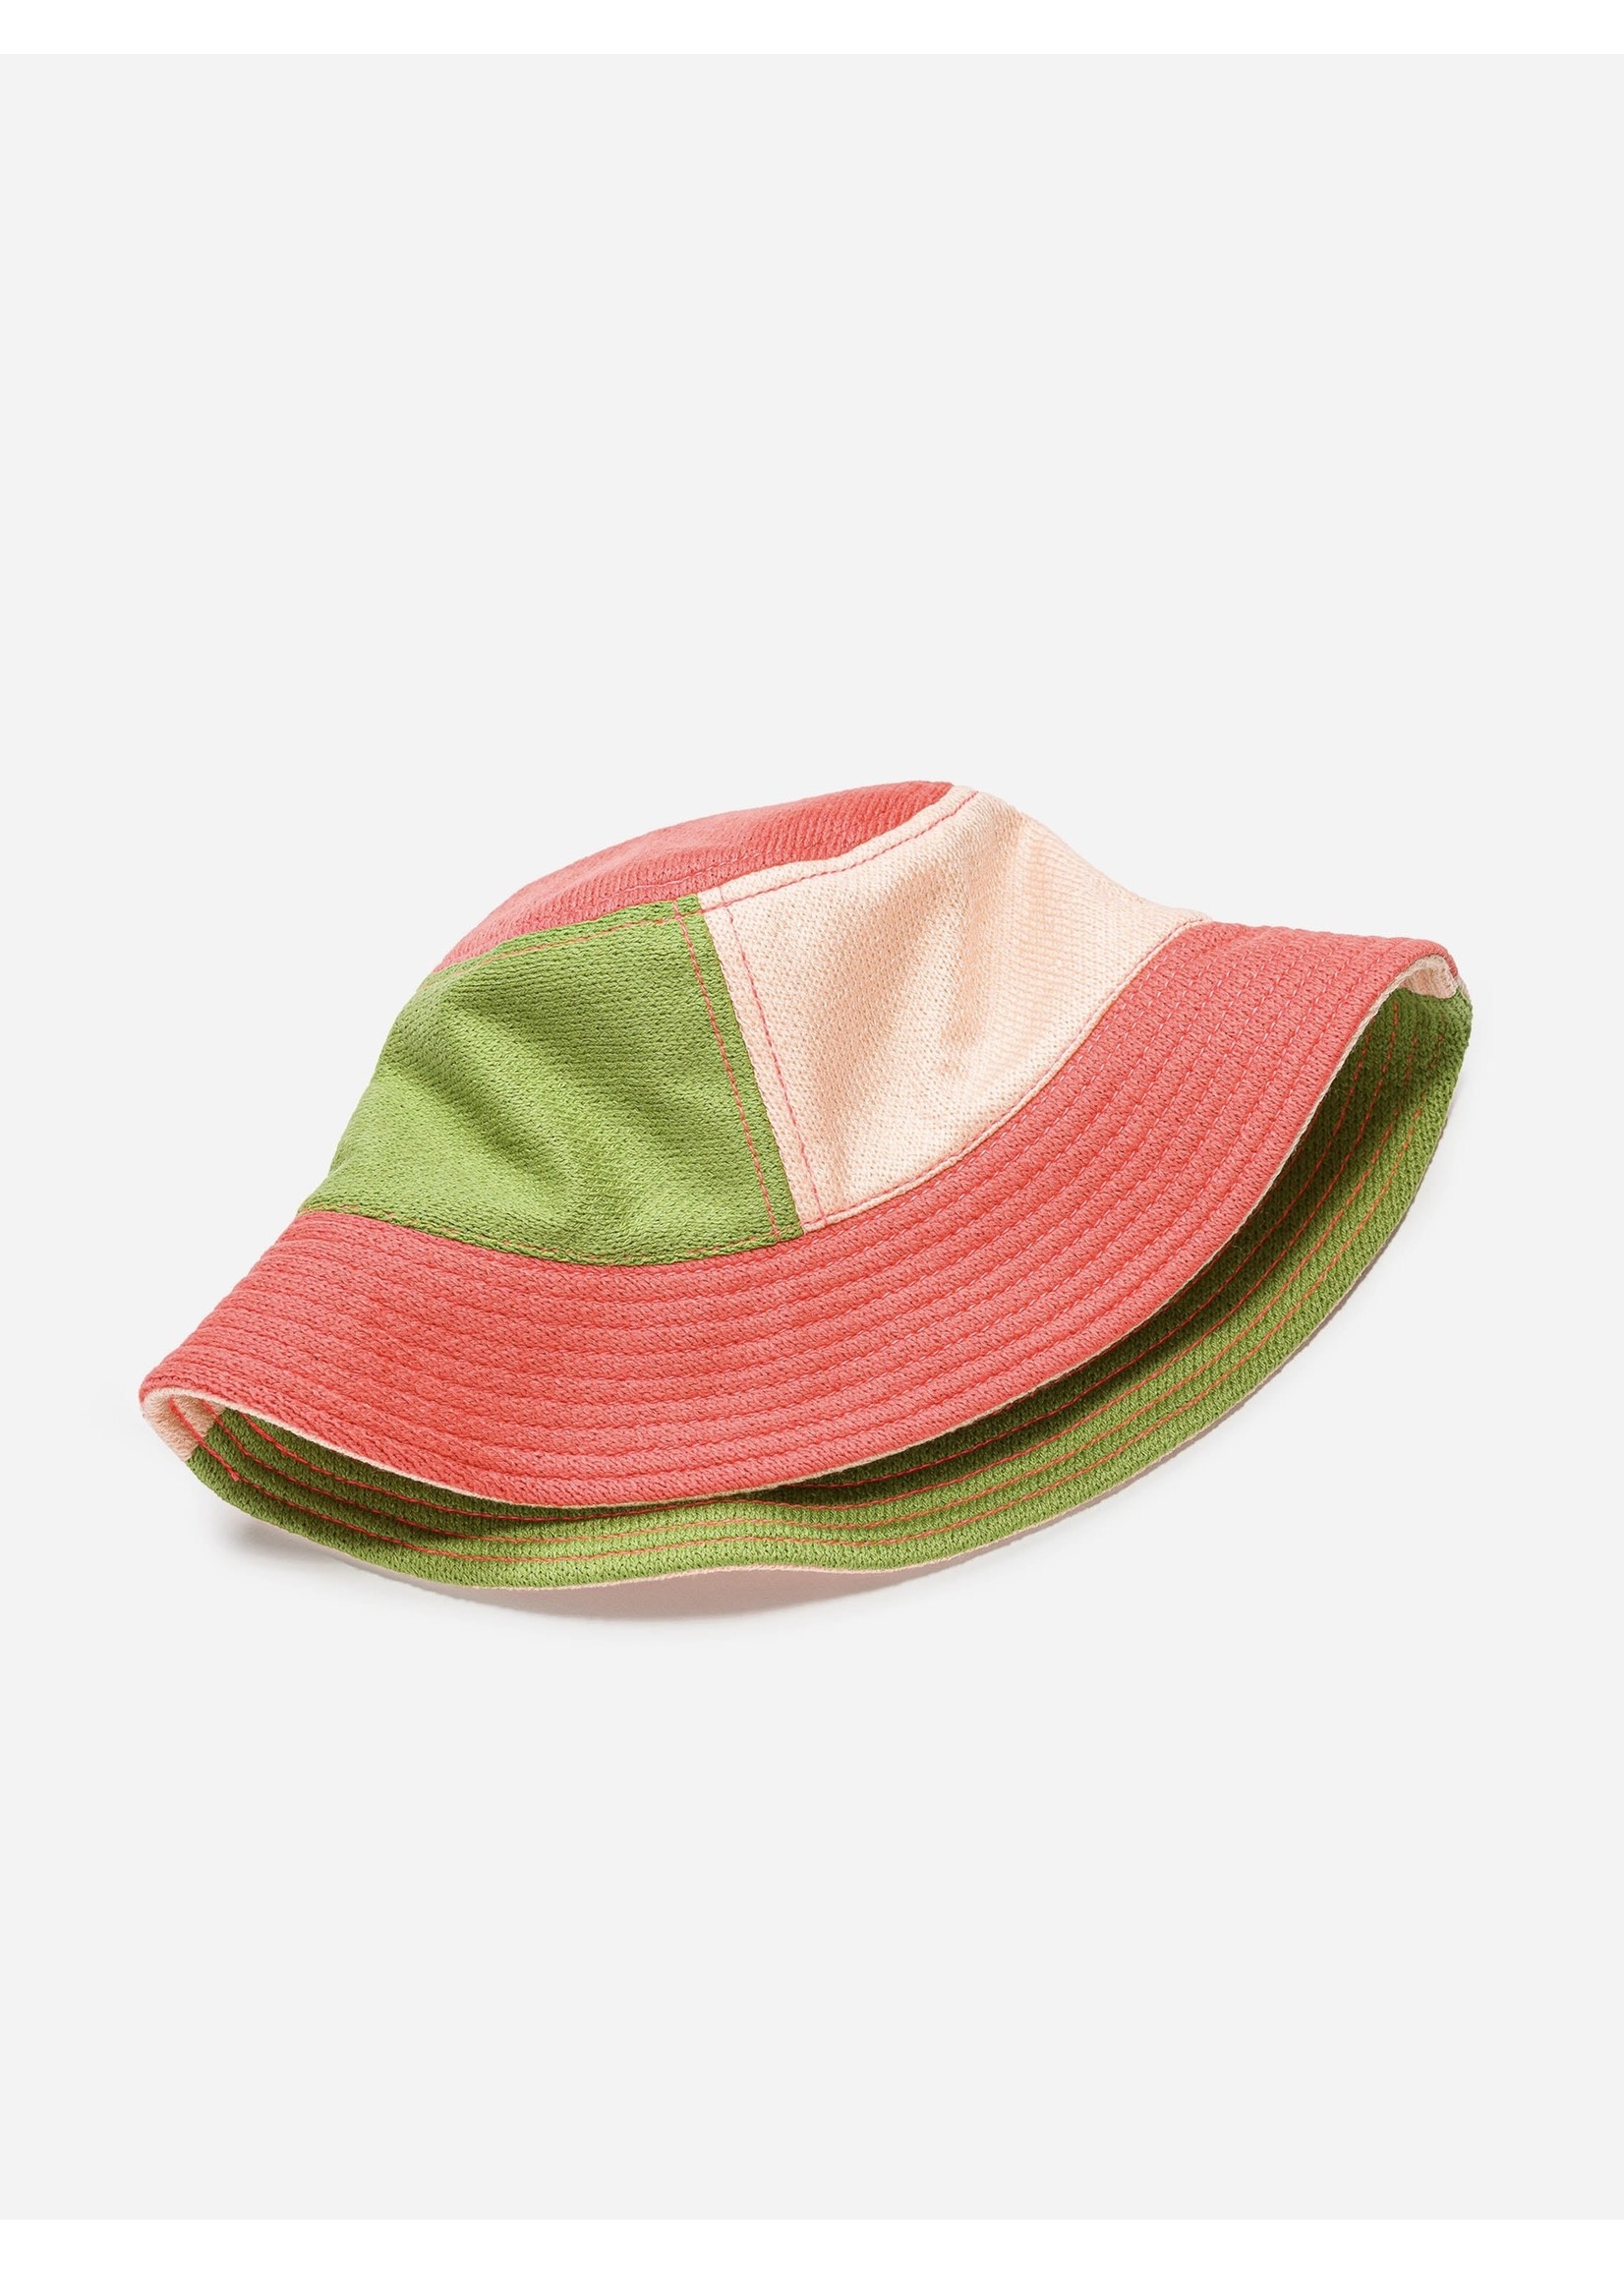 Verloop Verloop Colourblock Bucket Hat